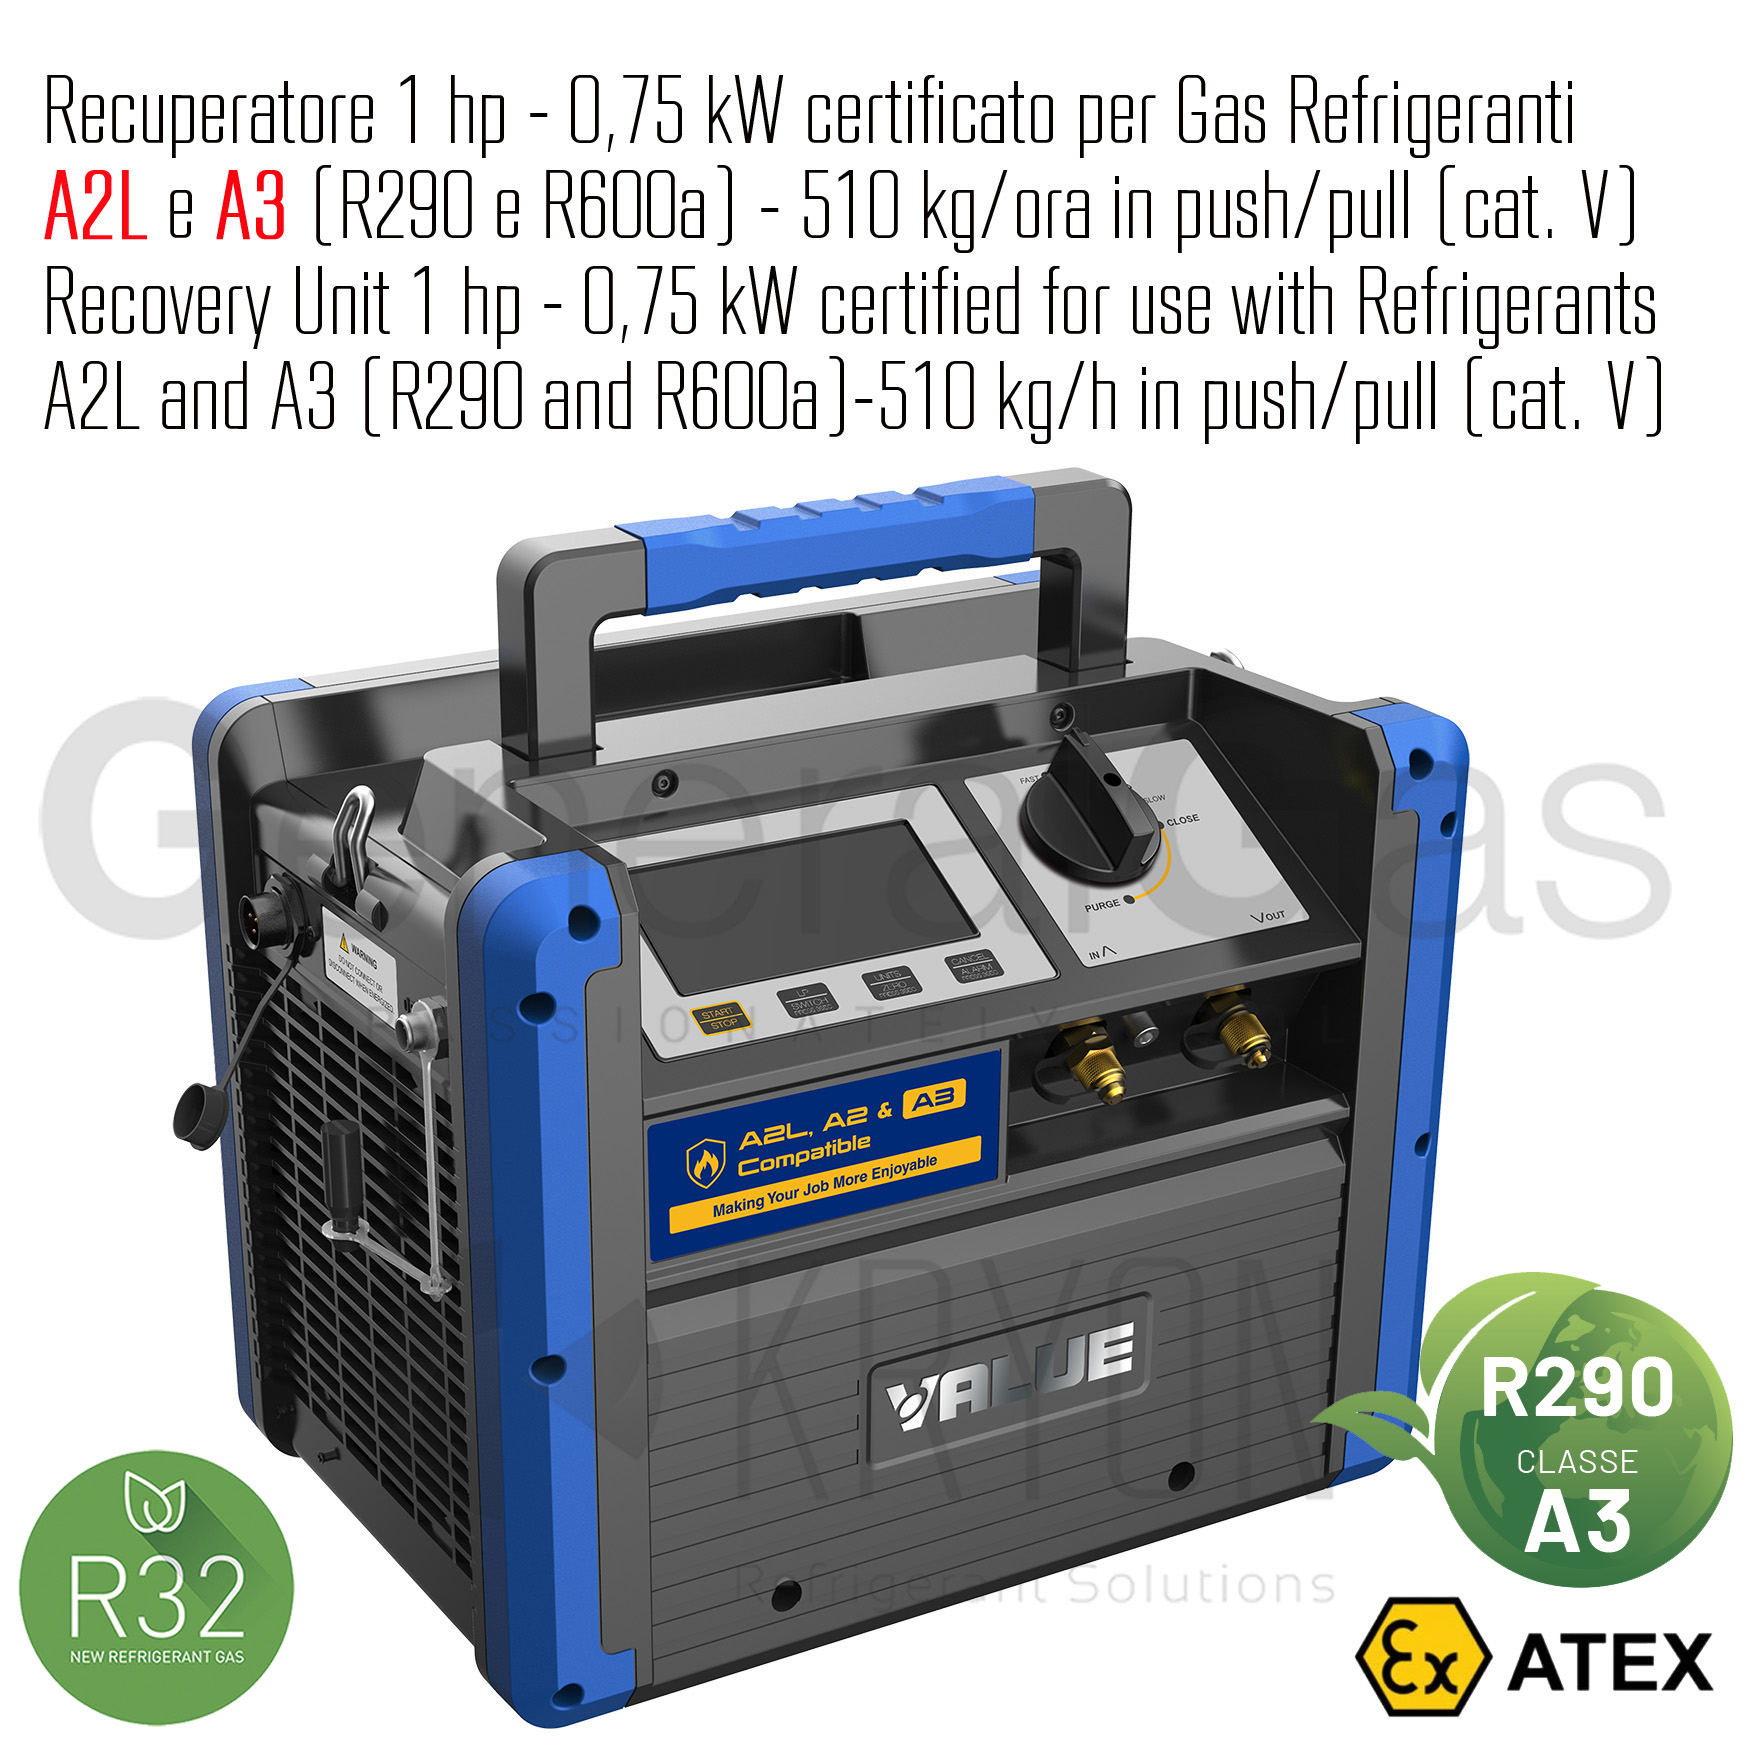 VALUE VRDDF - Recuperatore certificato ATEX per gas infiammabili 1 HP-0,75 KW, 510 kg/ora in push/pull, adatto anche per refrigeranti A2L e A3 (propano R290) - Foto 1 